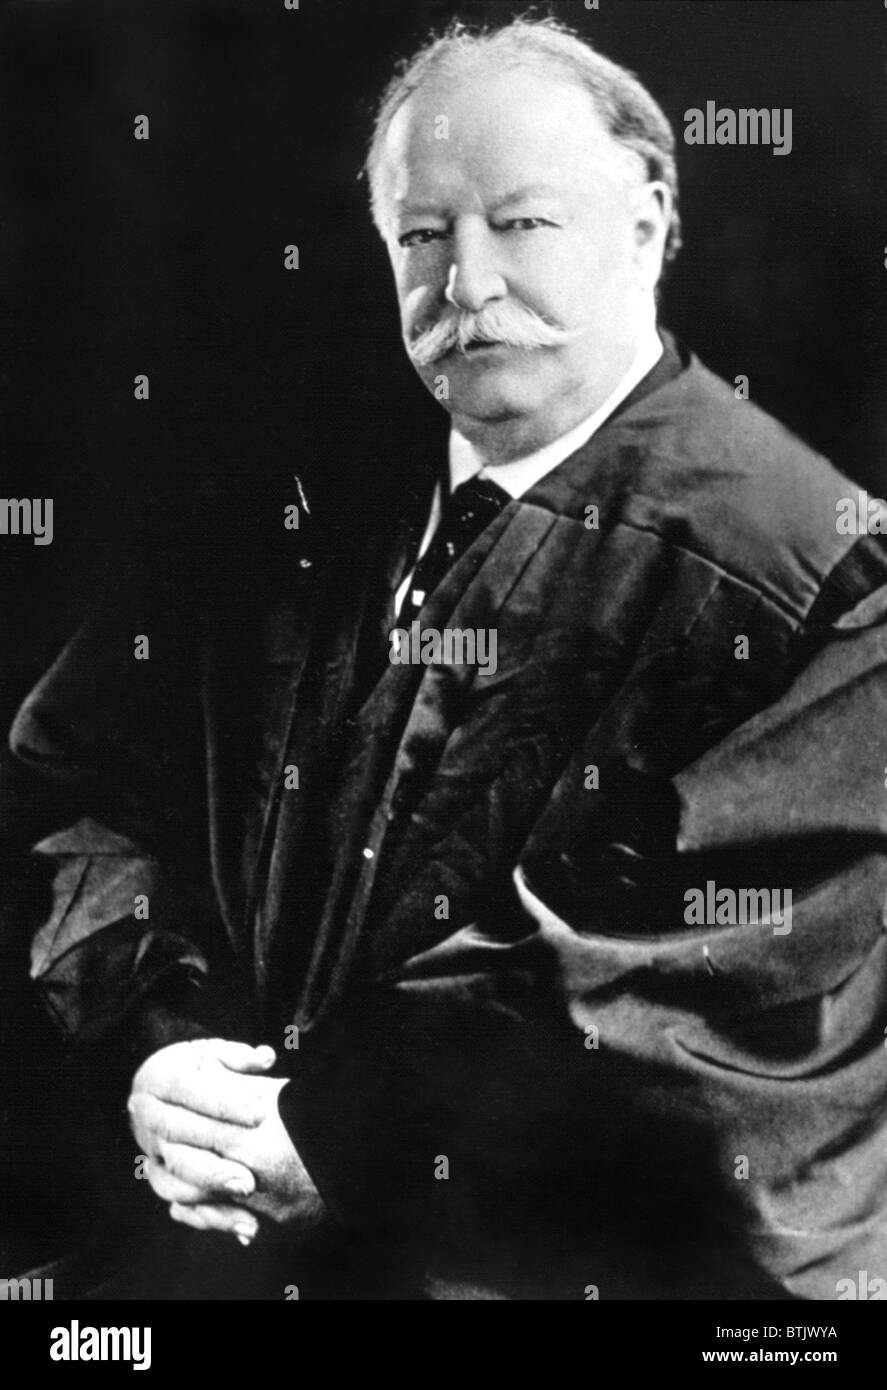 El ex Presidente de los Estados Unidos William Howard Taft, 4/28/38 Foto de stock